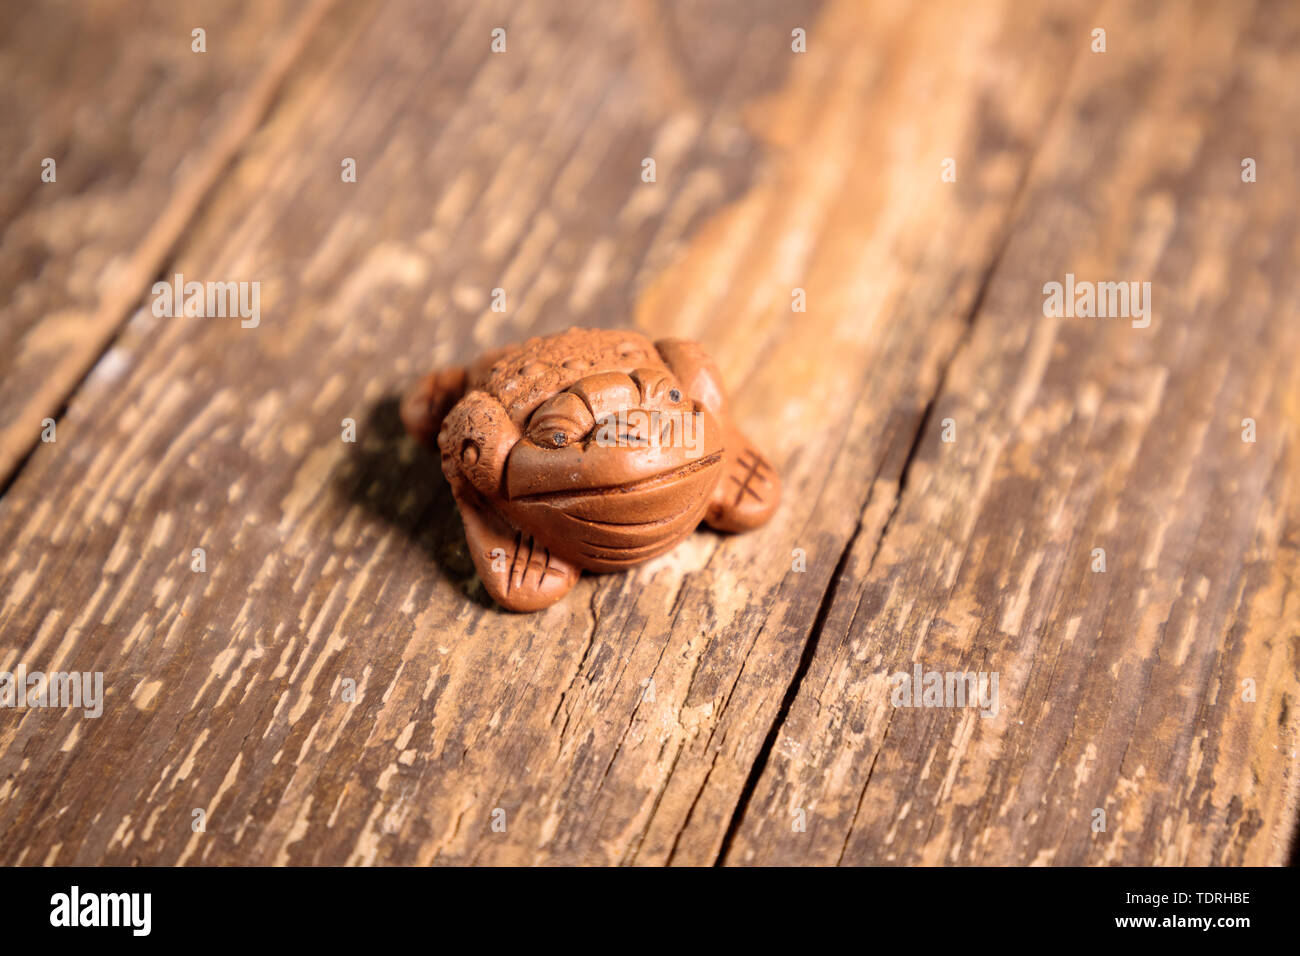 Rana cinese poco figurina portachiavi su un vecchio tavolo in legno Foto Stock